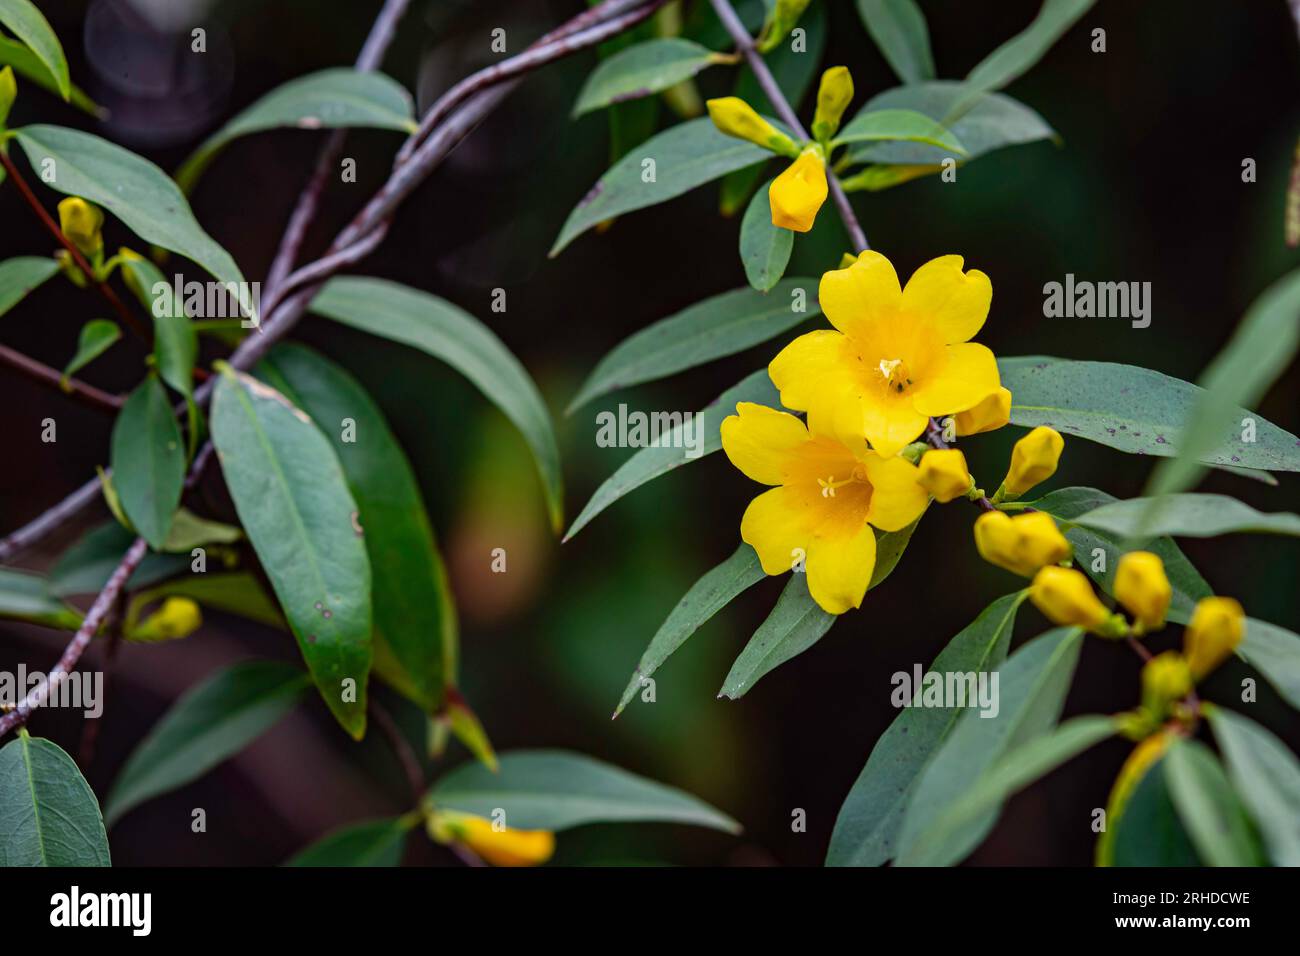 Hintergrund des gelben Jasmins (Gelsemium sempervirens), der im Februar in Alabama blühte. Stockfoto